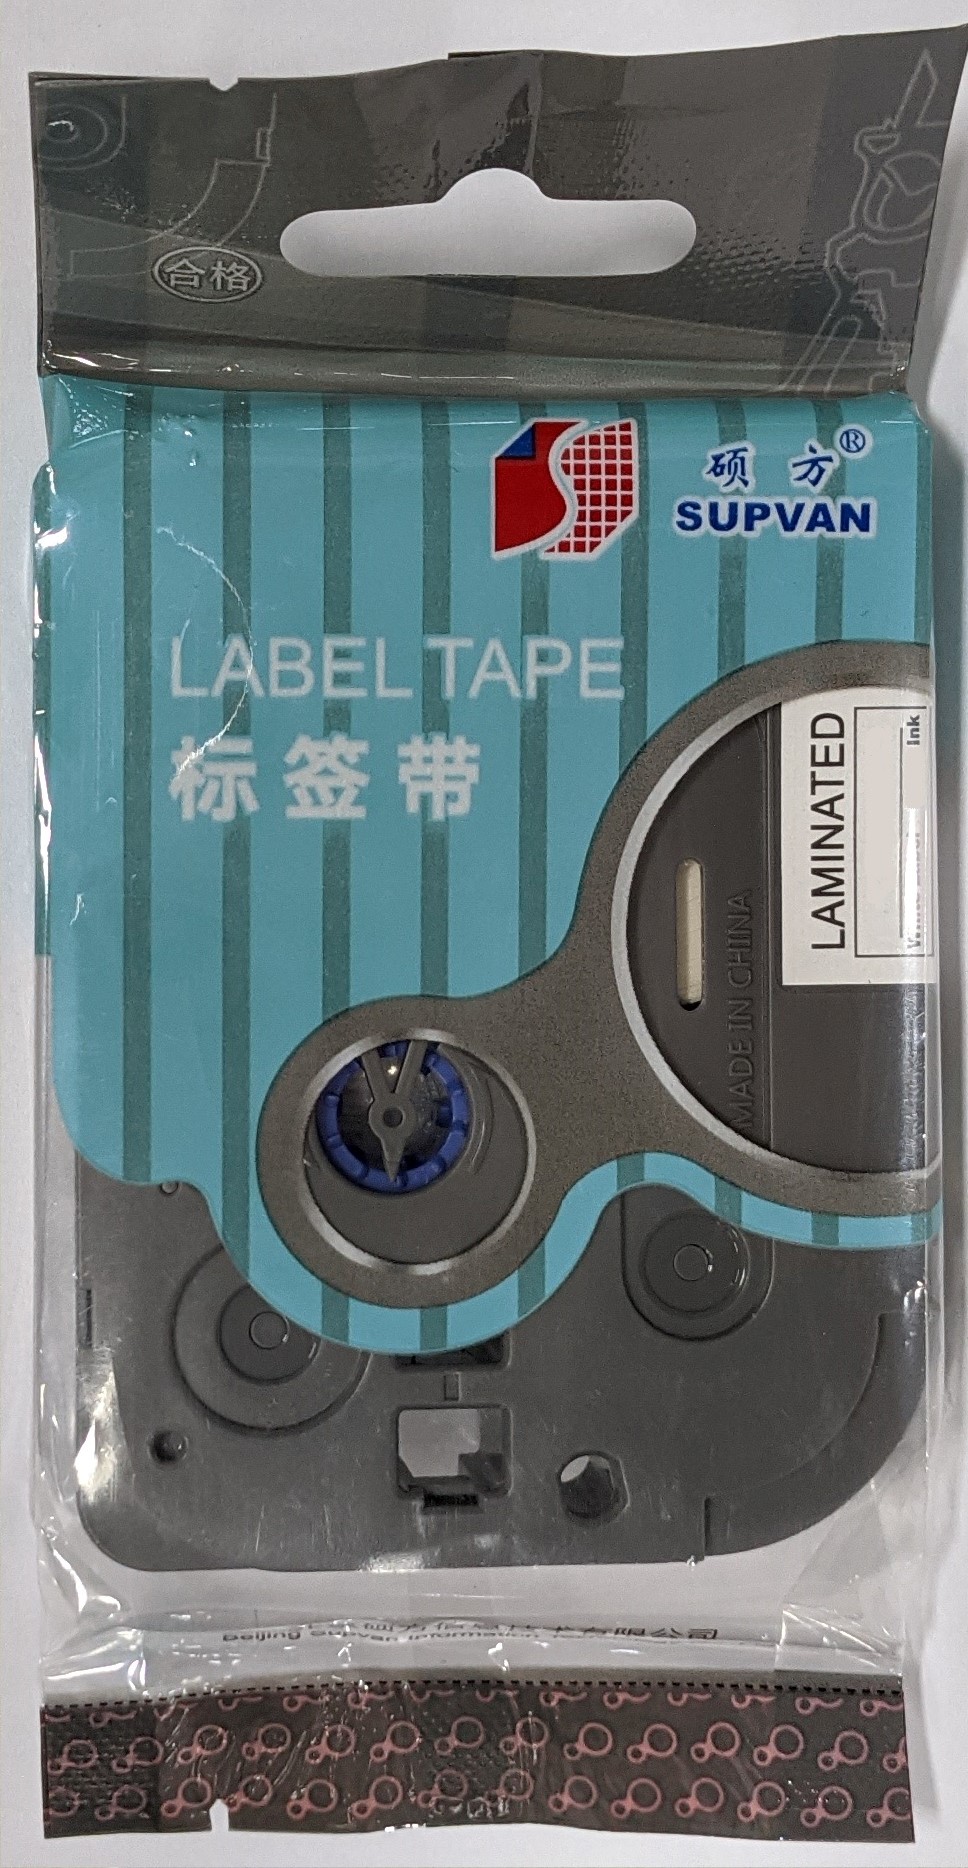 Samolepicí páska Supvan L-431E, 12mm x 8m, černý tisk / červený podklad, laminovaná